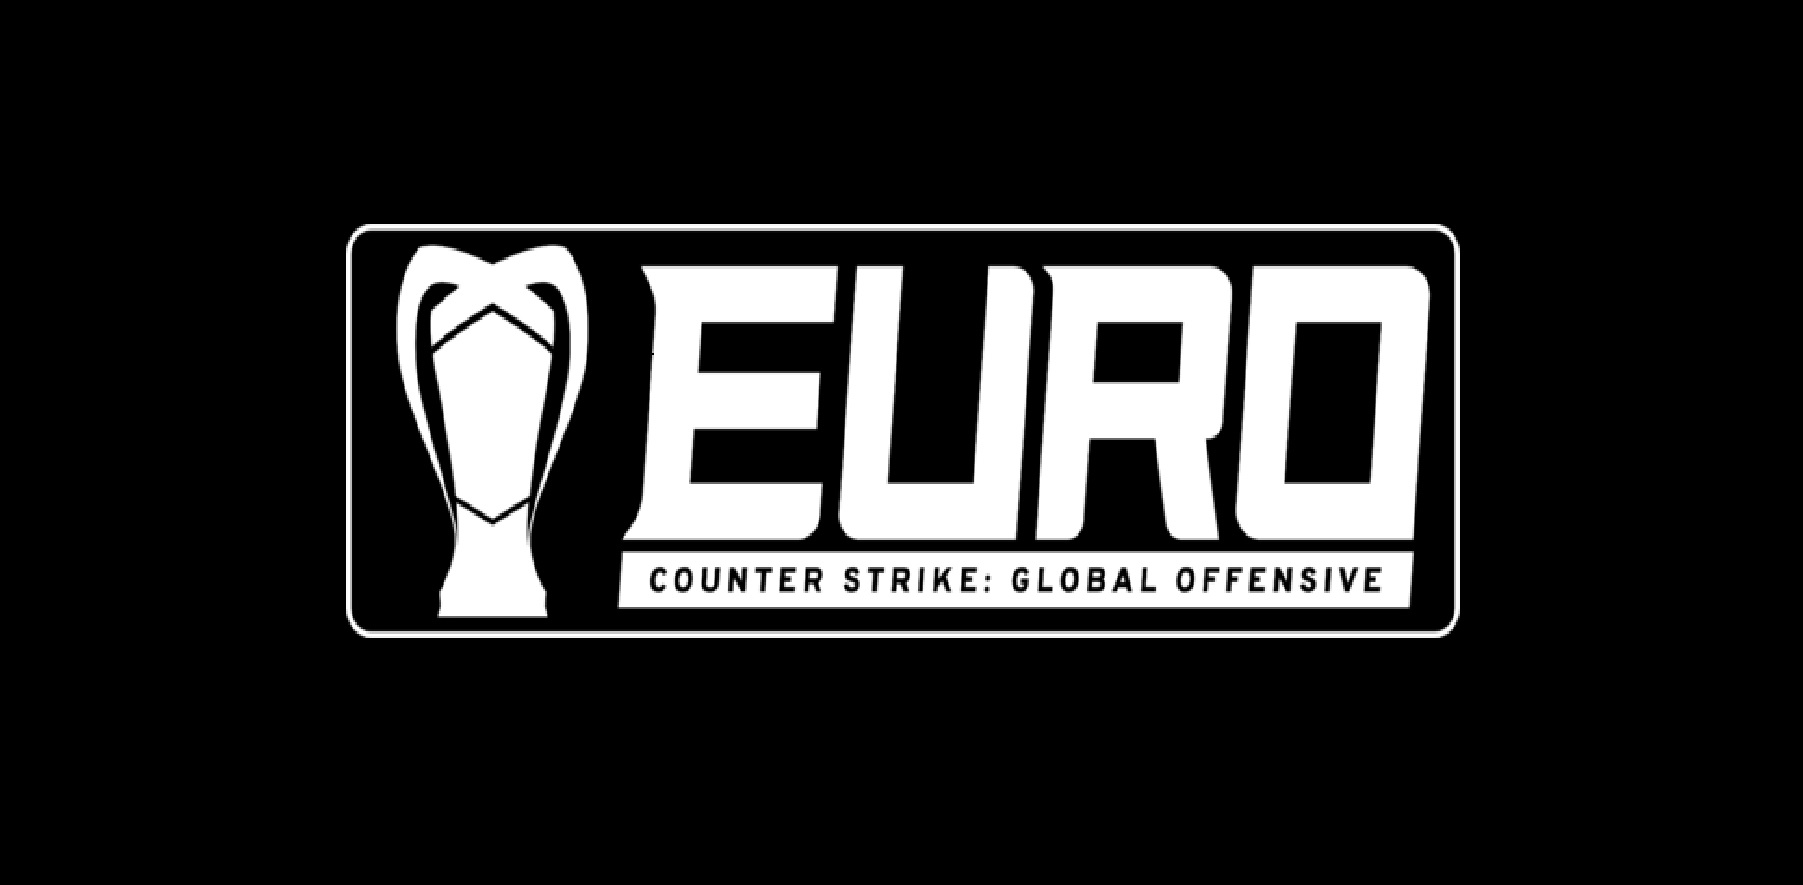 Evropský CS:GO šampionát startuje. Vše, co potřebujete vědět na jednom místě